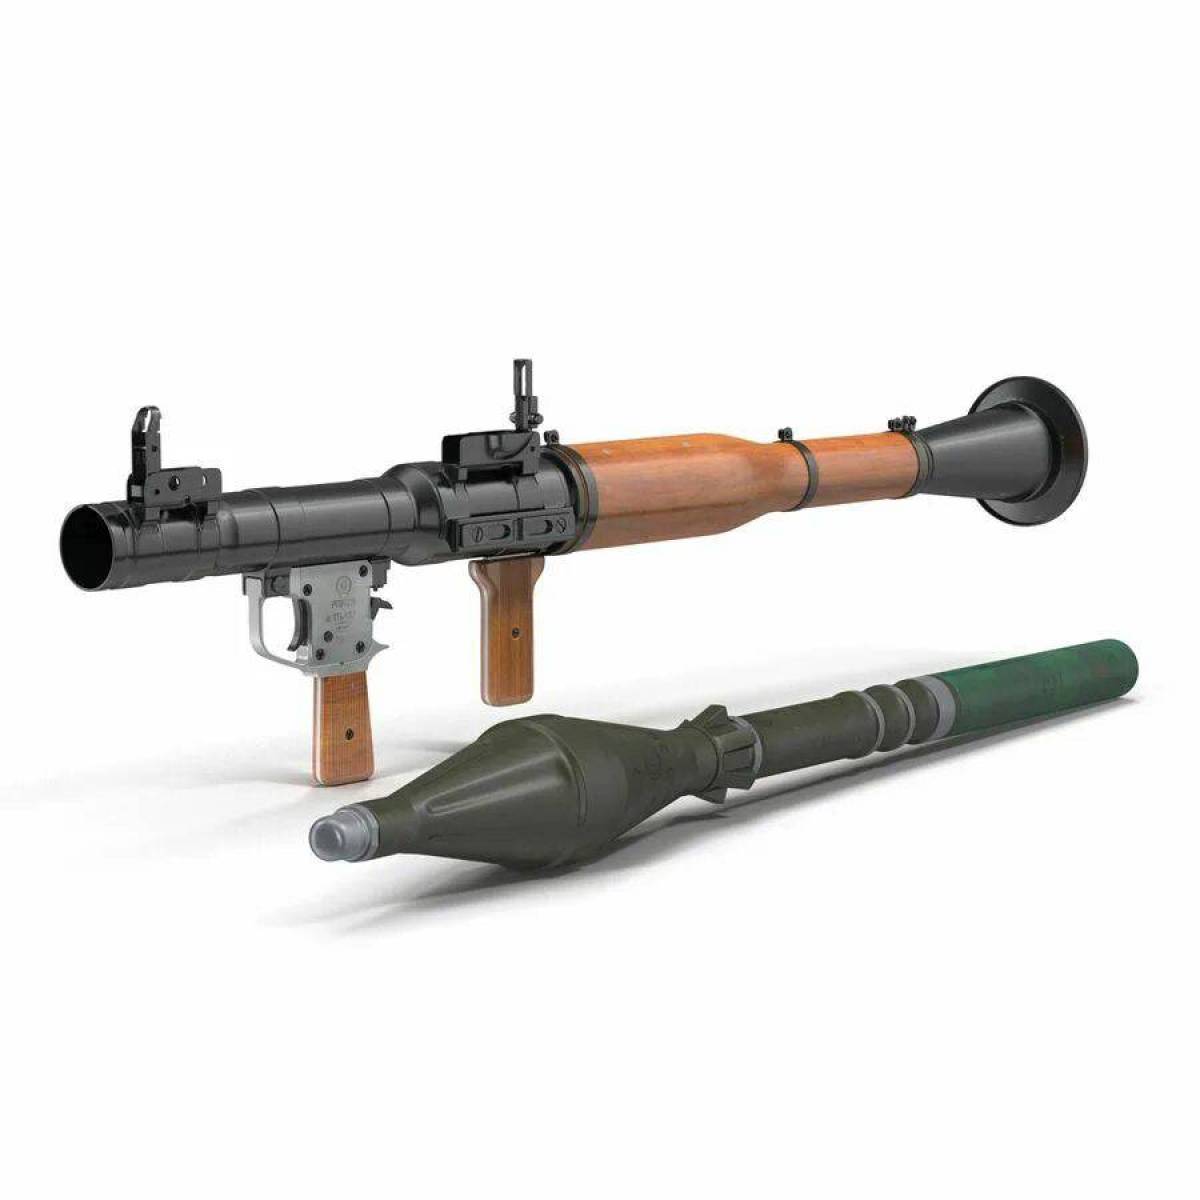 Модели рпг. Ручной противотанковый гранатомет «РПГ-7», «РПГ-7д». РПГ 7. РПГ 2 И РПГ 7. Оружие РПГ-7.